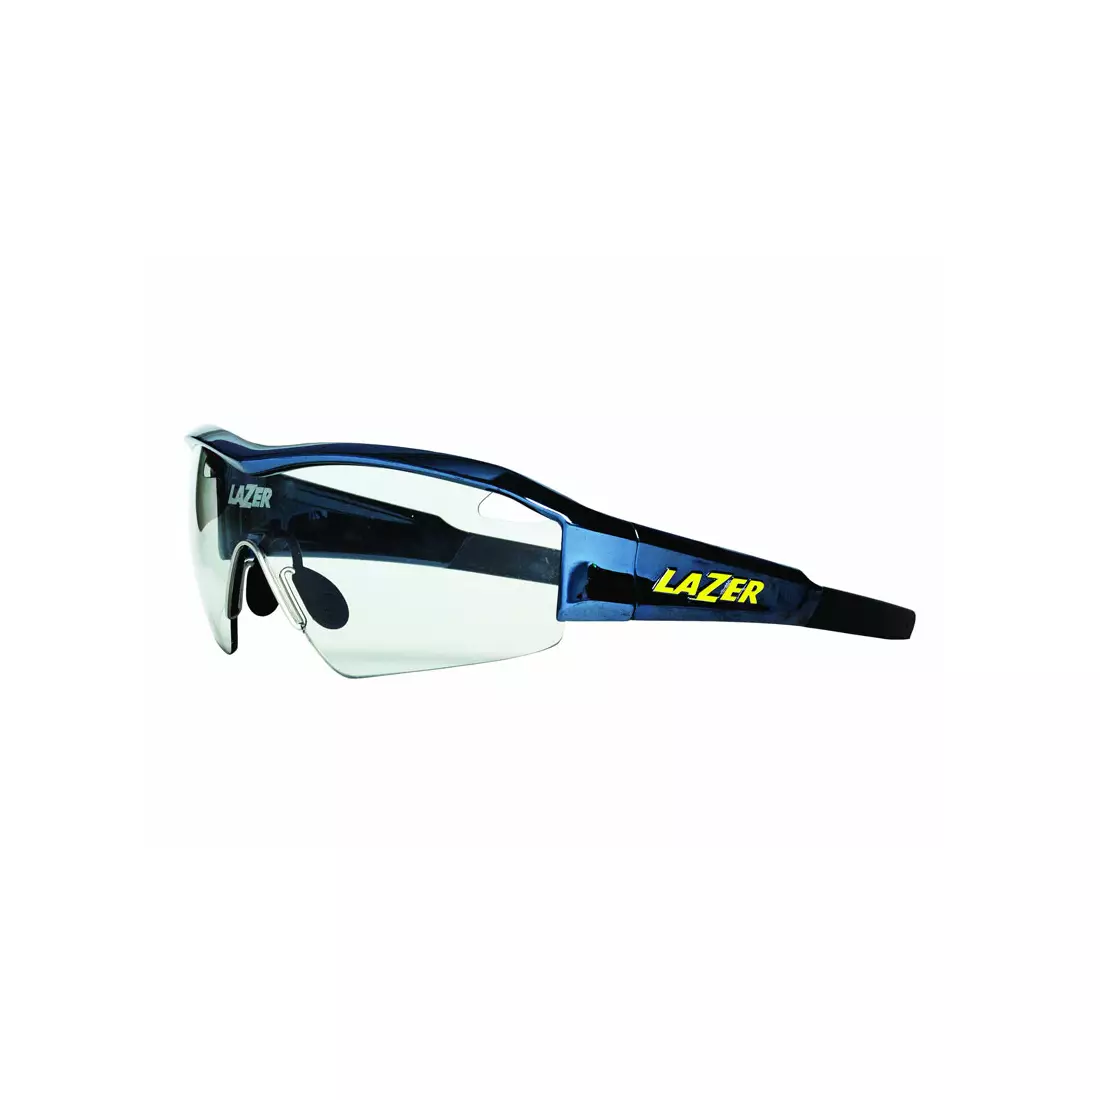 LZR-OKL-SOLD-F-CHRM Brýle LAZER SS17 SOLID STATE1 PHOTOCHROM Chrome (Crystal Photochrom)